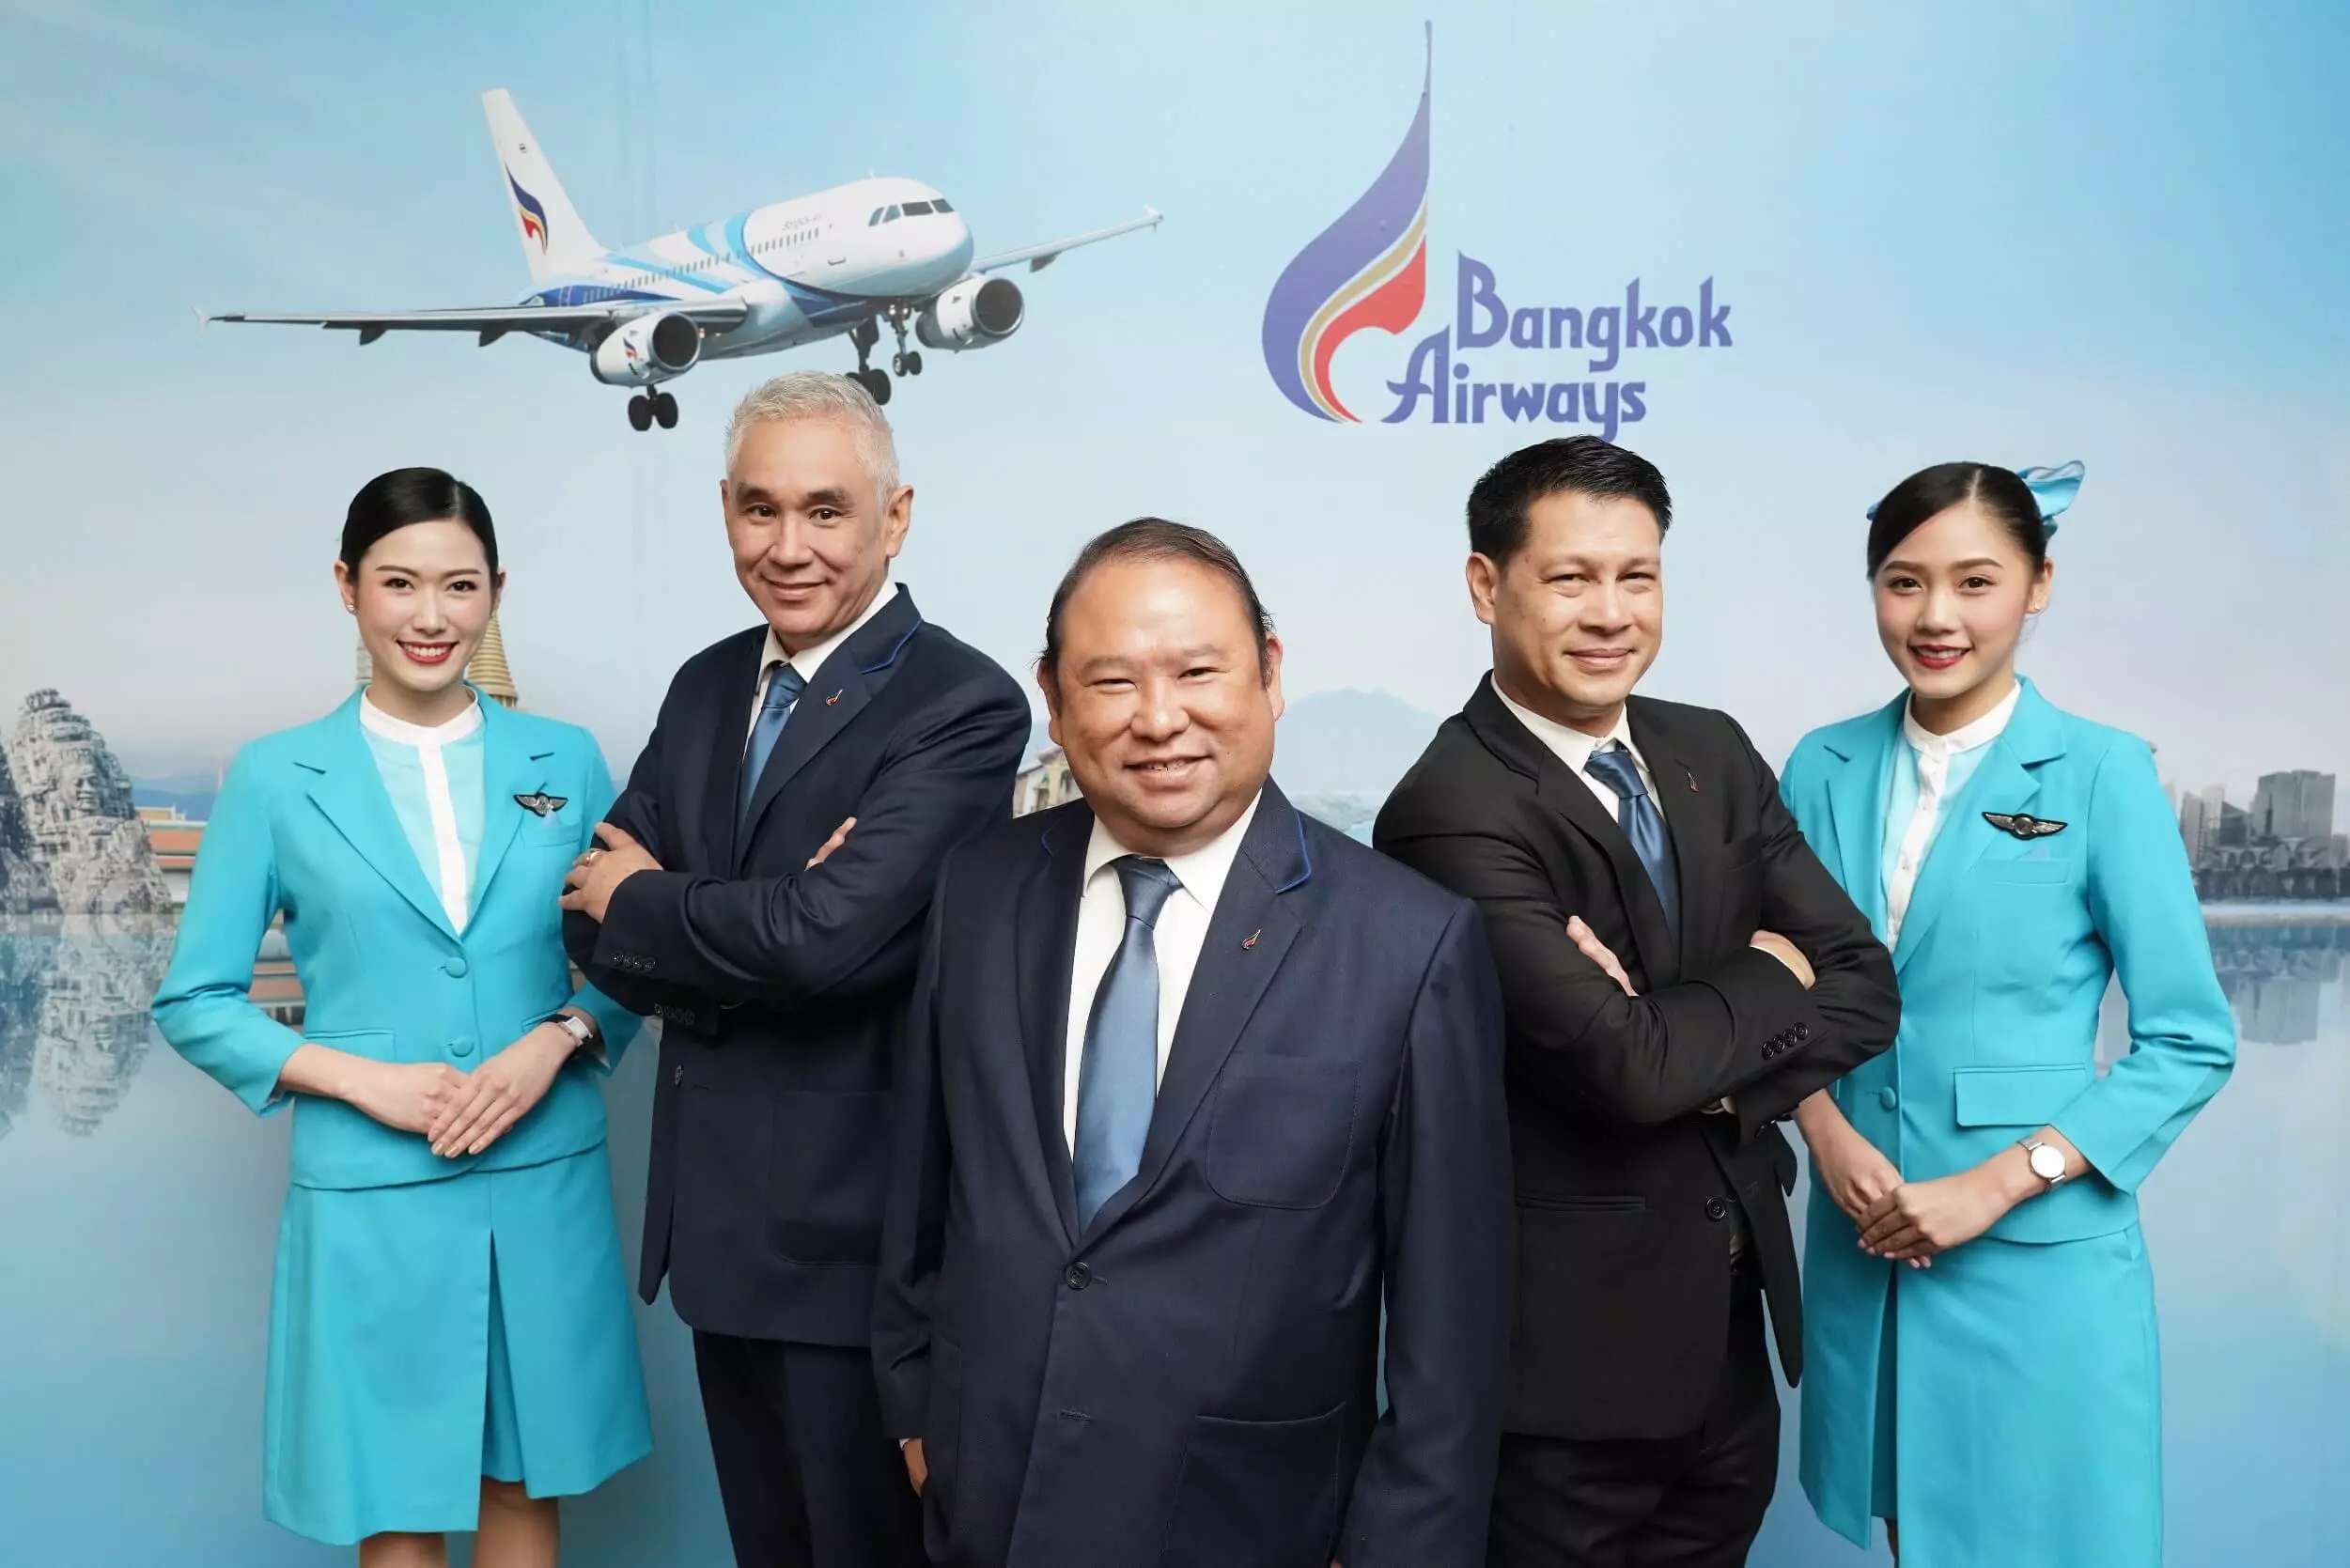 Bangkok airways | book flights and save